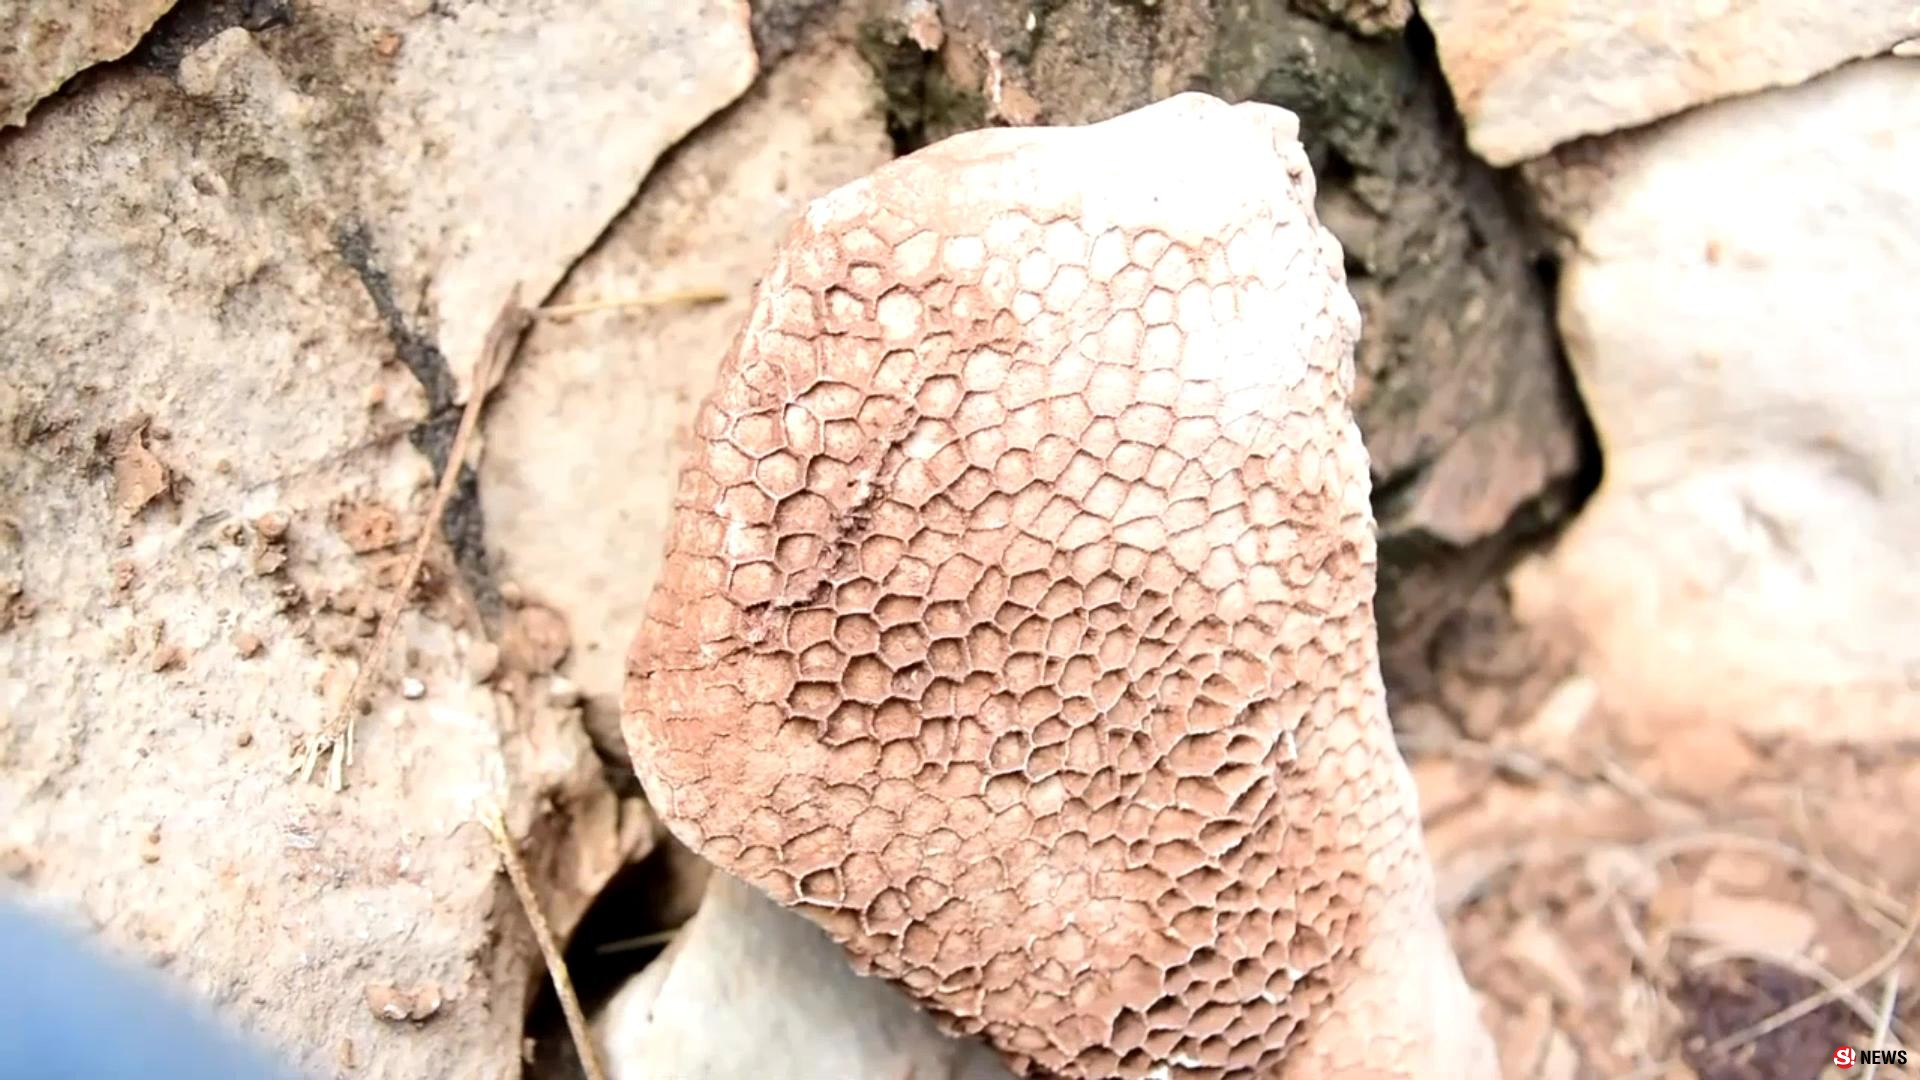 มหัศจรรย์แผ่นดินเพชรบูรณ์ พบซากฟอสซิลพืช-สัตว์ อายุร่วม 300 ปี